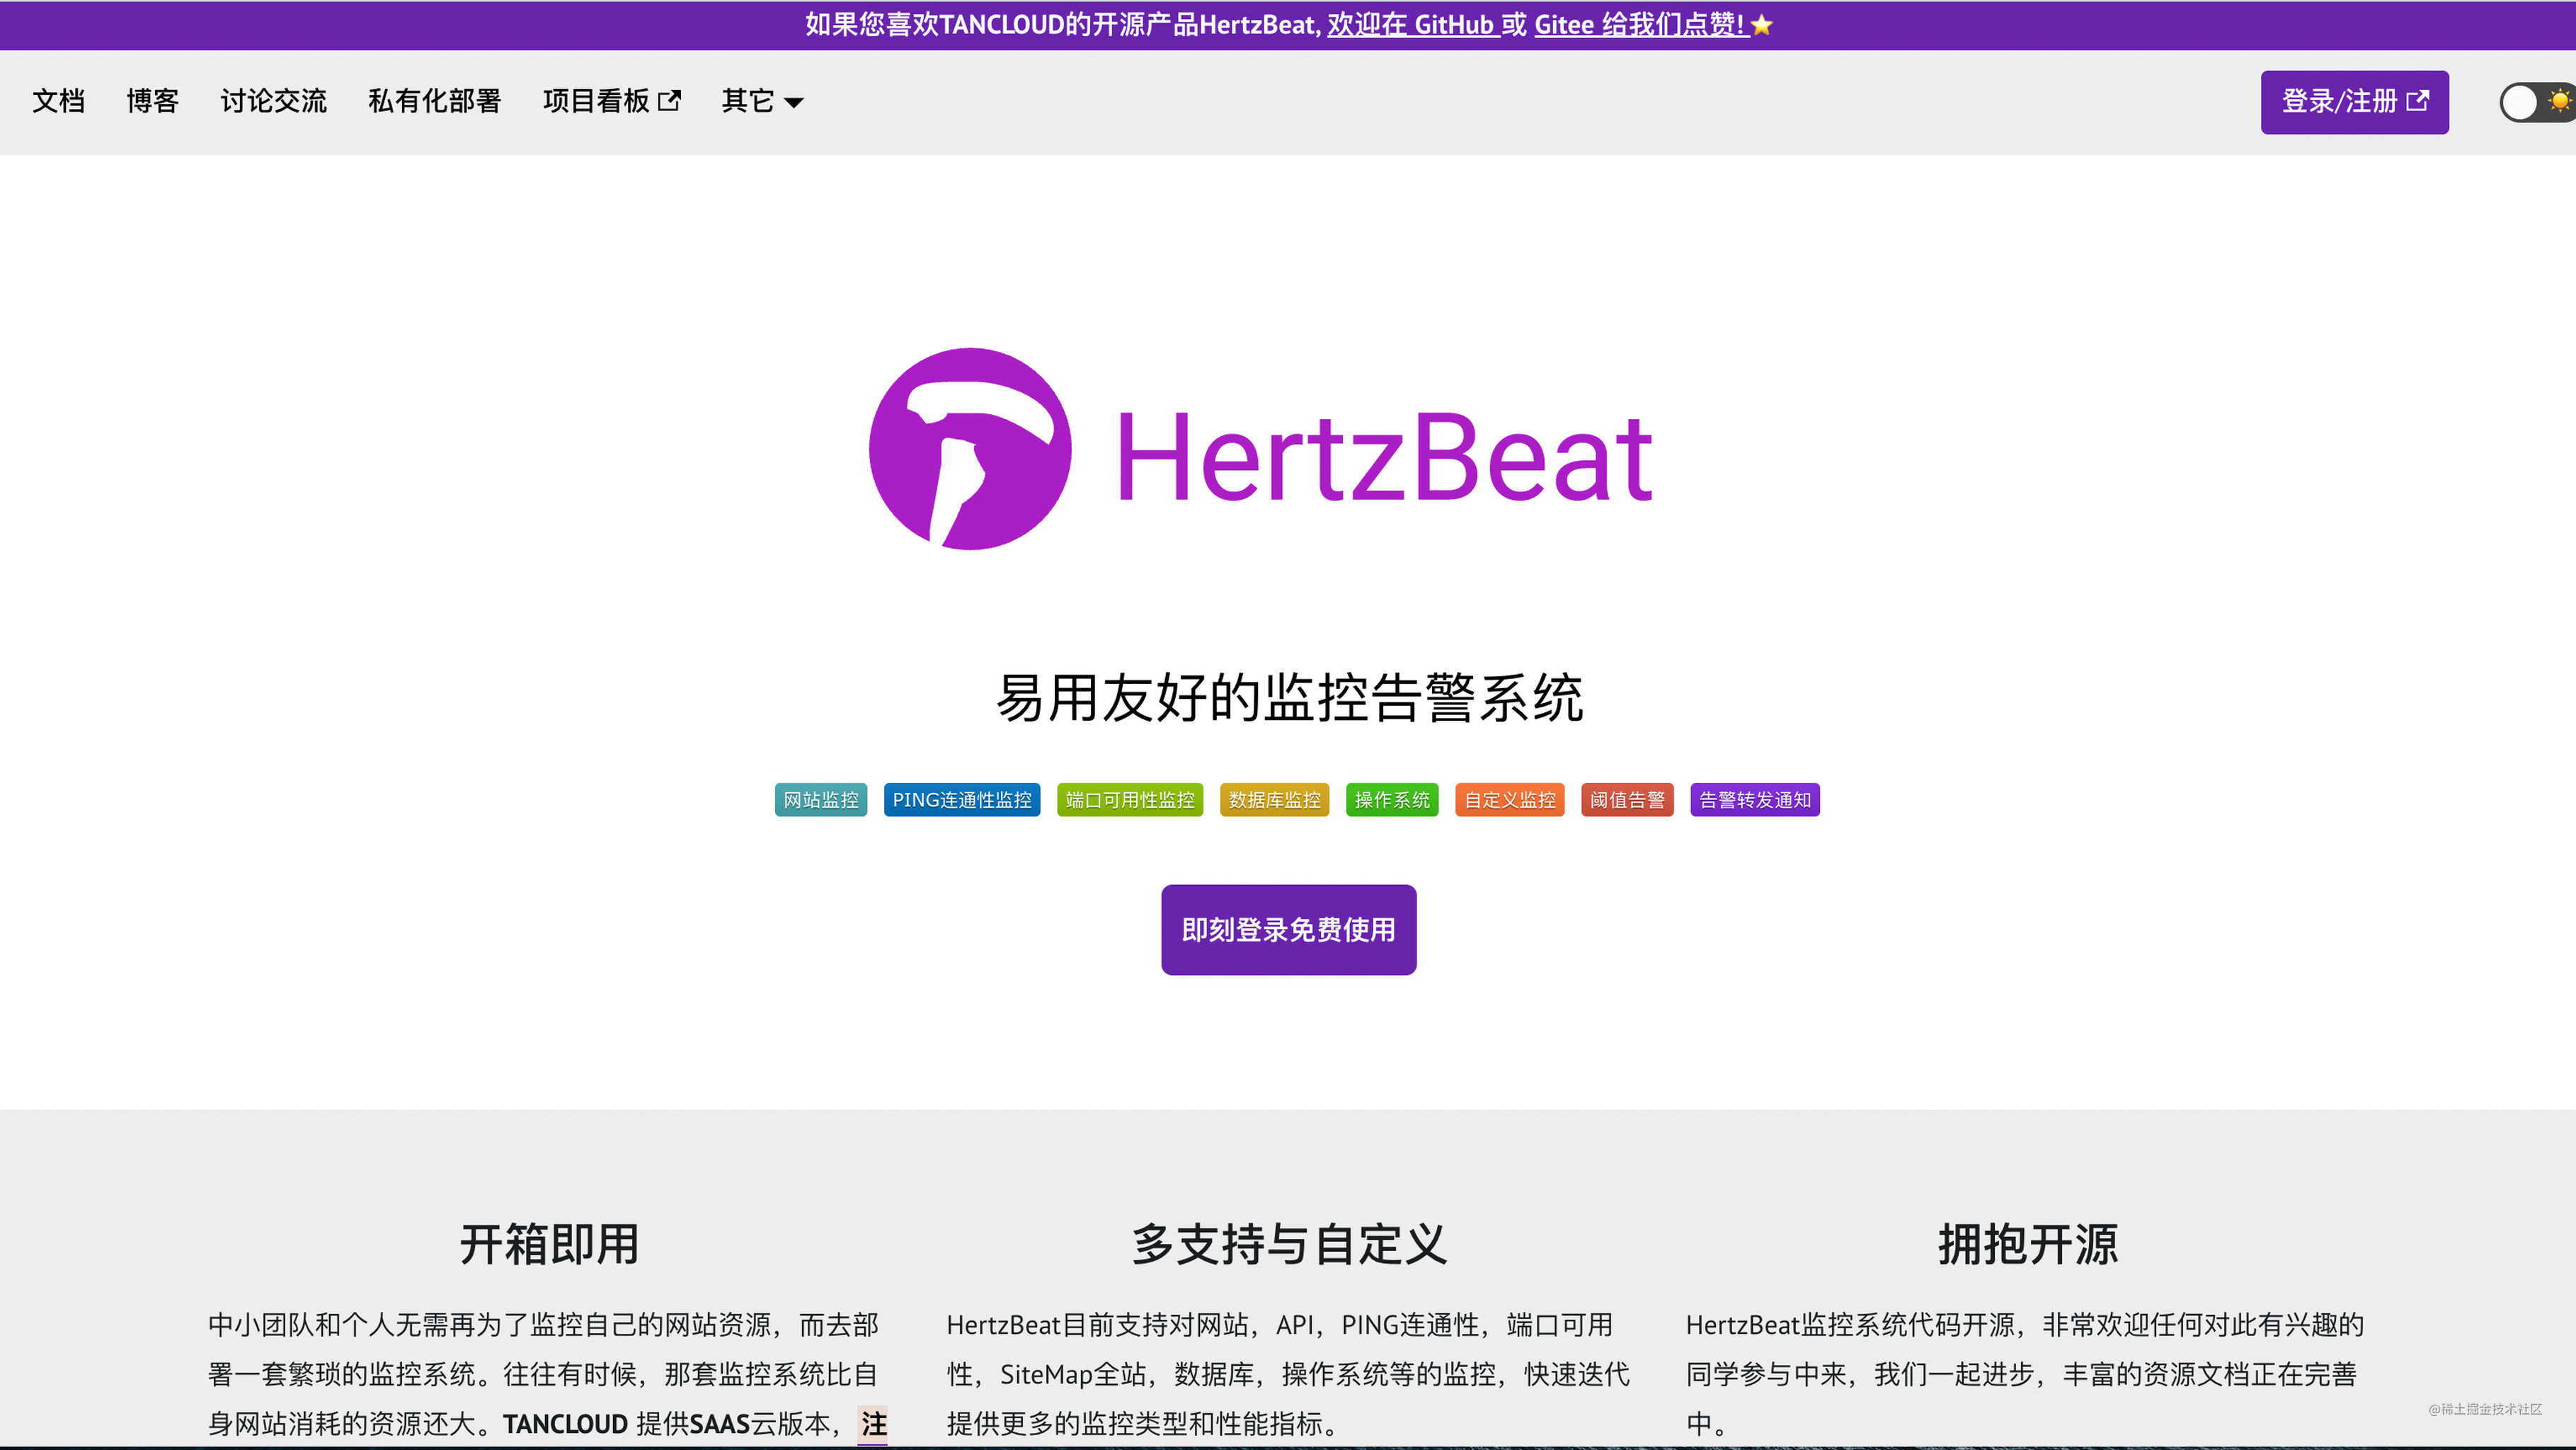 云监控系统 HertzBeat v1.0 正式发布啦